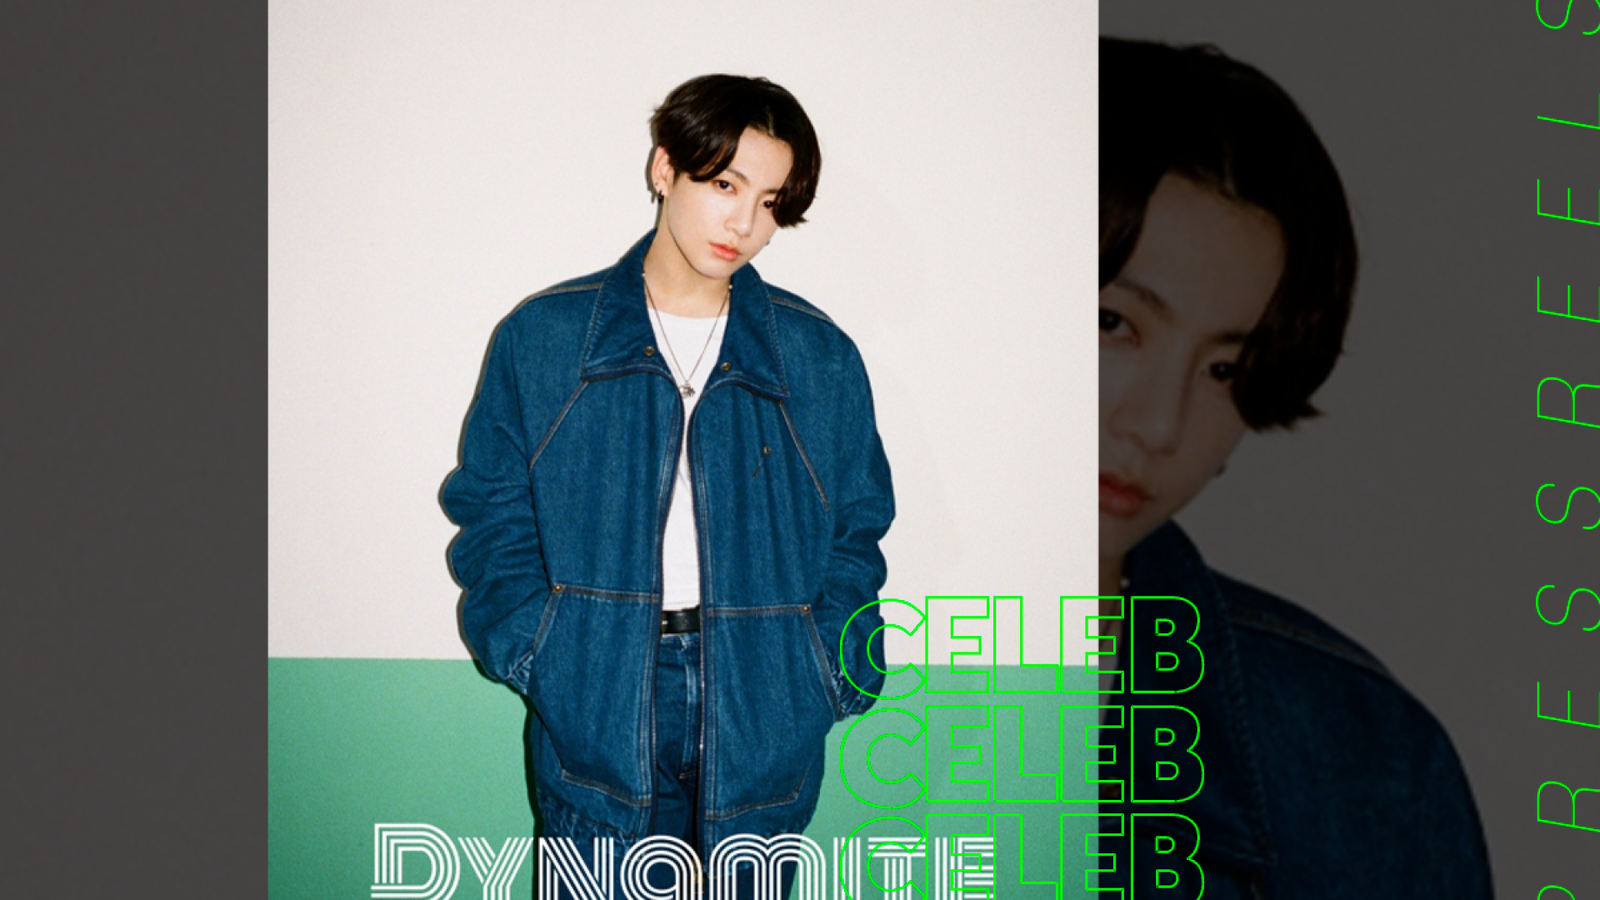 BTS Jungkook, 'Dynamite' Teaser Released on August 11